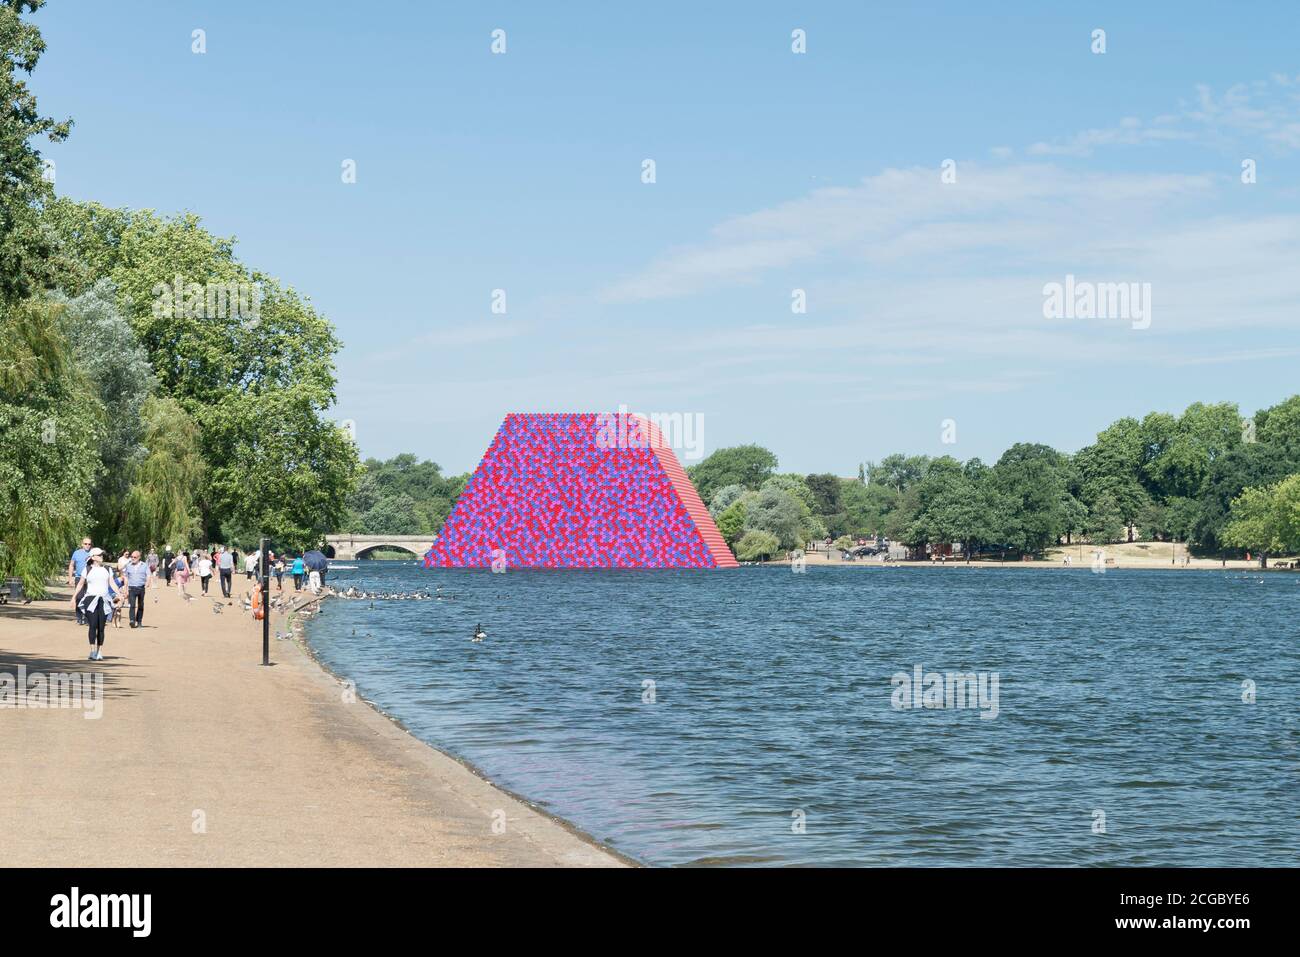 Die London Mastaba von Christo und Jeanne-Claude ist eine temporäre Skulptur im Hyde Park, die aus horizontal gestapelten Fässern auf einer schwimmenden Plattform in Serpentine Lake besteht. Installiert für den Sommer 2018 in London, Großbritannien. Stockfoto